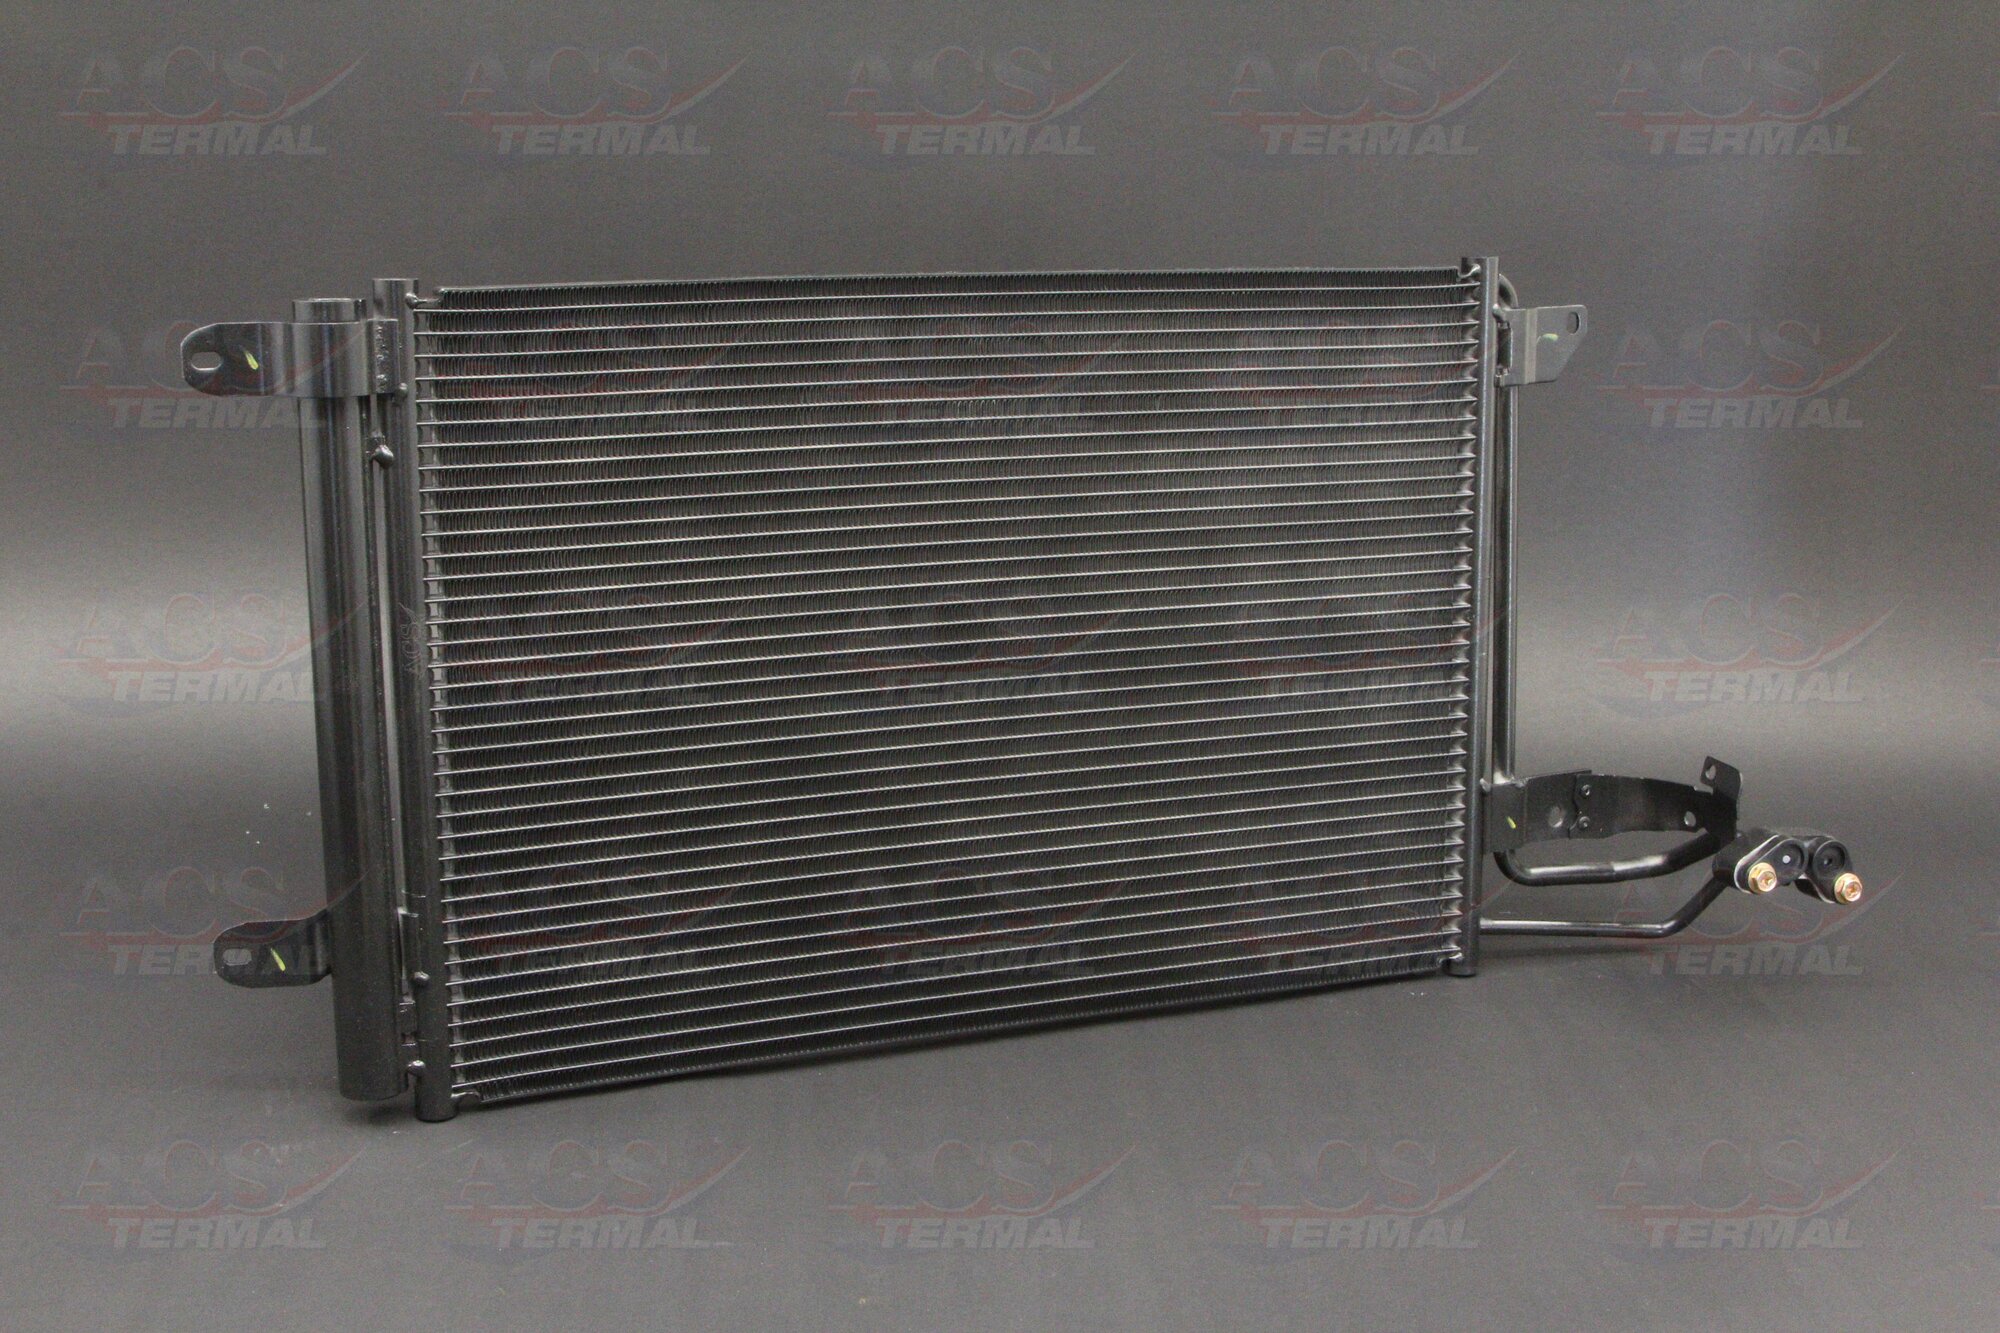 Радиатор кондиционера для Сеат Леон 2005-2012 год выпуска (Seat Leon) ACS TERMAL 104684